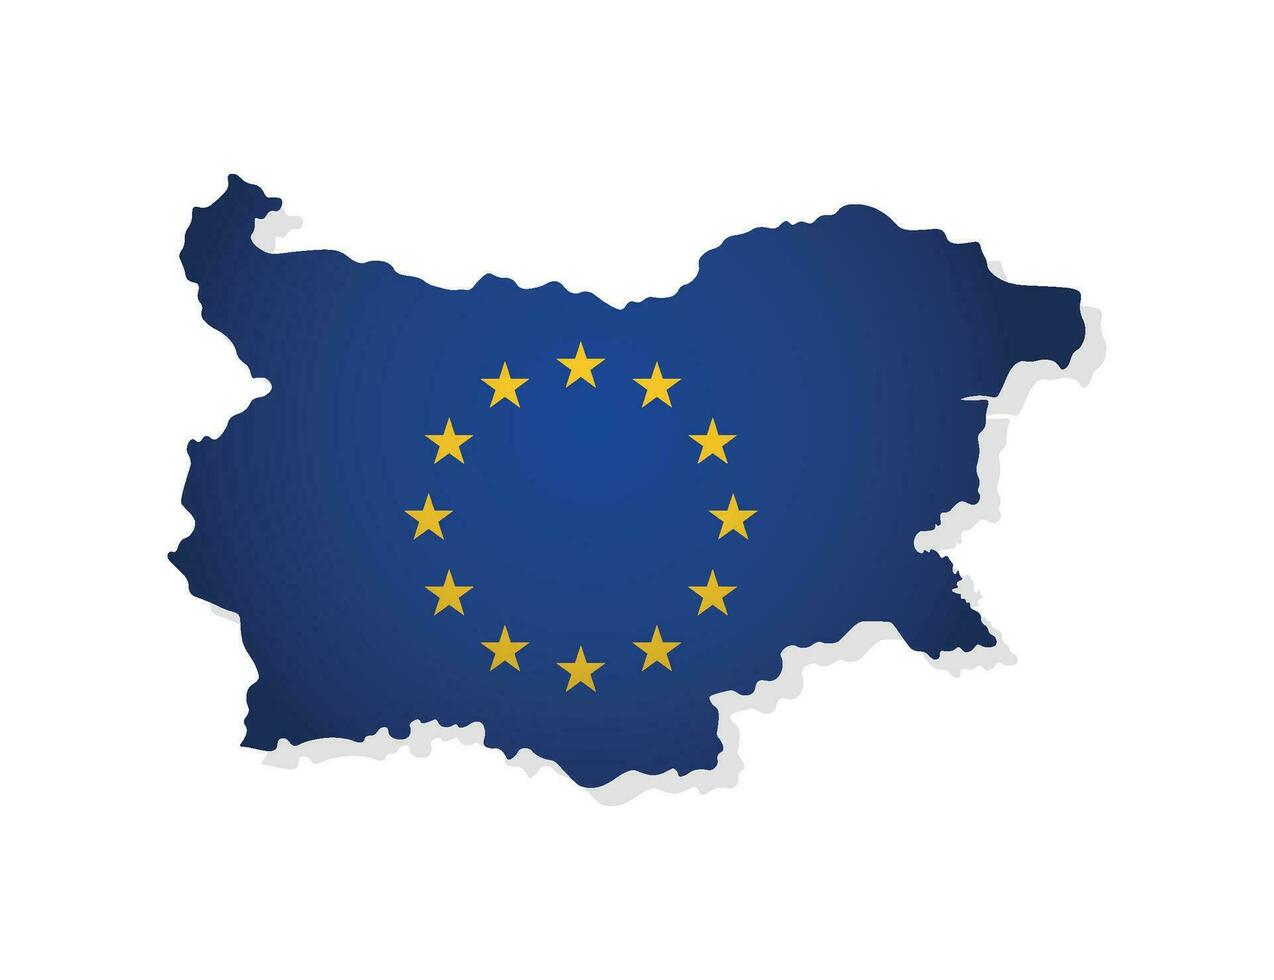 vector illustratie met geïsoleerd kaart van lid van Europese unie - bulgarije. concept versierd door de EU vlag met goud sterren Aan blauw achtergrond. modern ontwerp